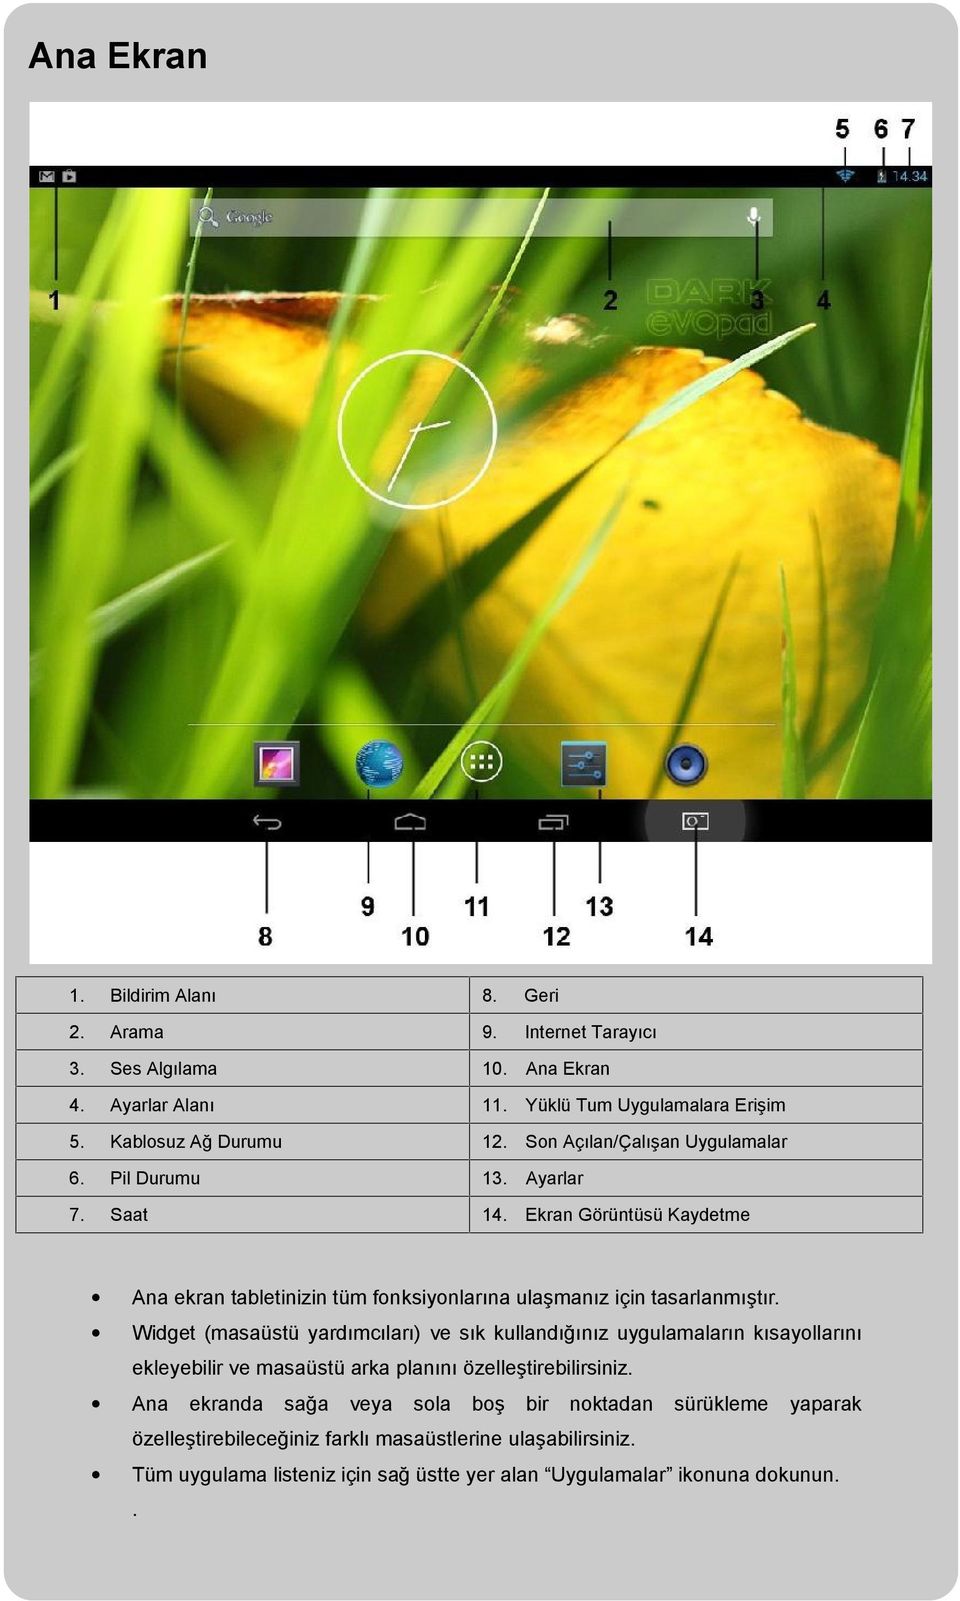 Ekran Görüntüsü Kaydetme Ana ekran tabletinizin tüm fonksiyonlarına ulaşmanız için tasarlanmıştır.